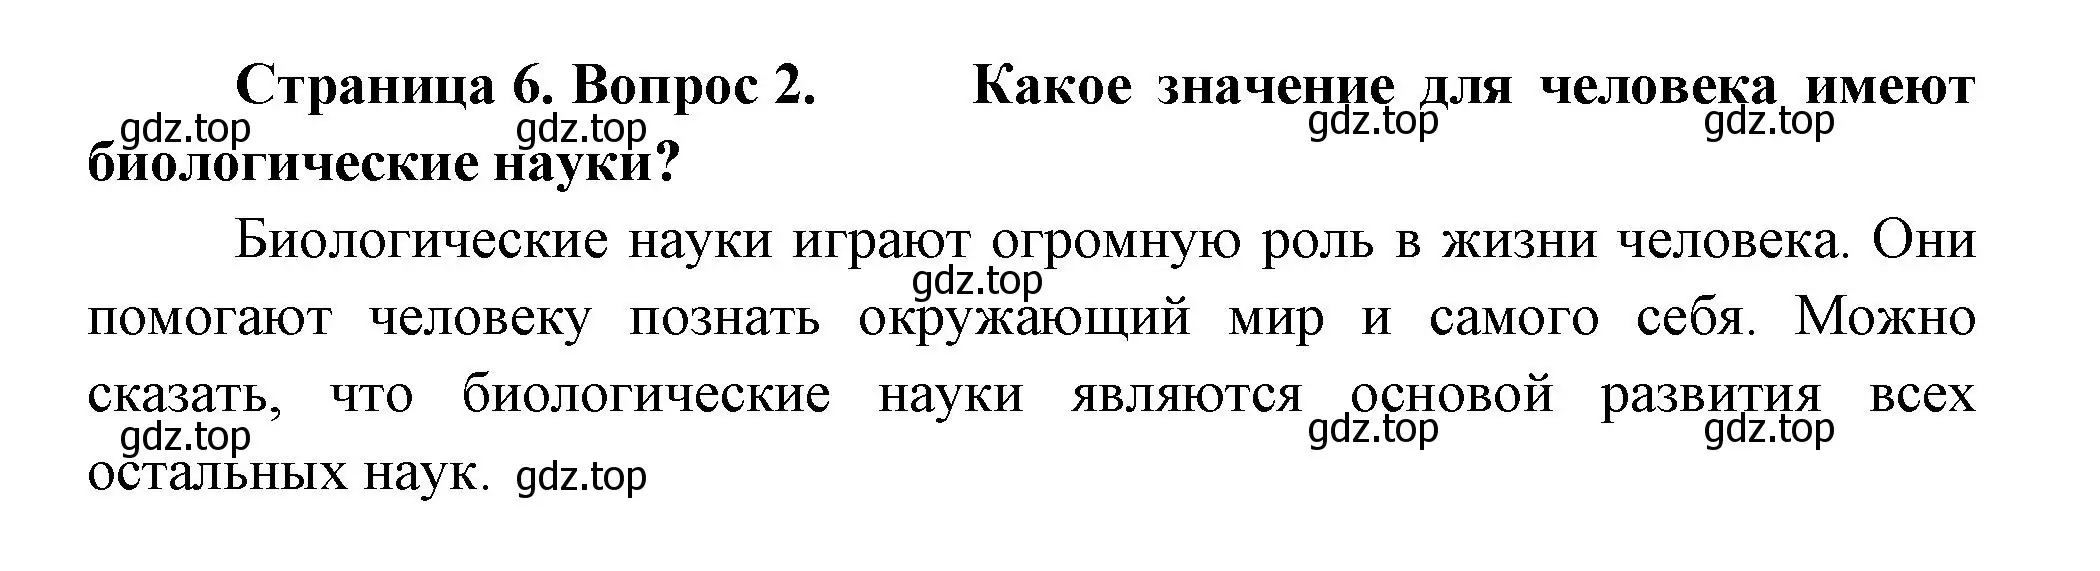 Решение номер 2 (страница 6) гдз по биологии 9 класс Пасечник, Каменский, учебник